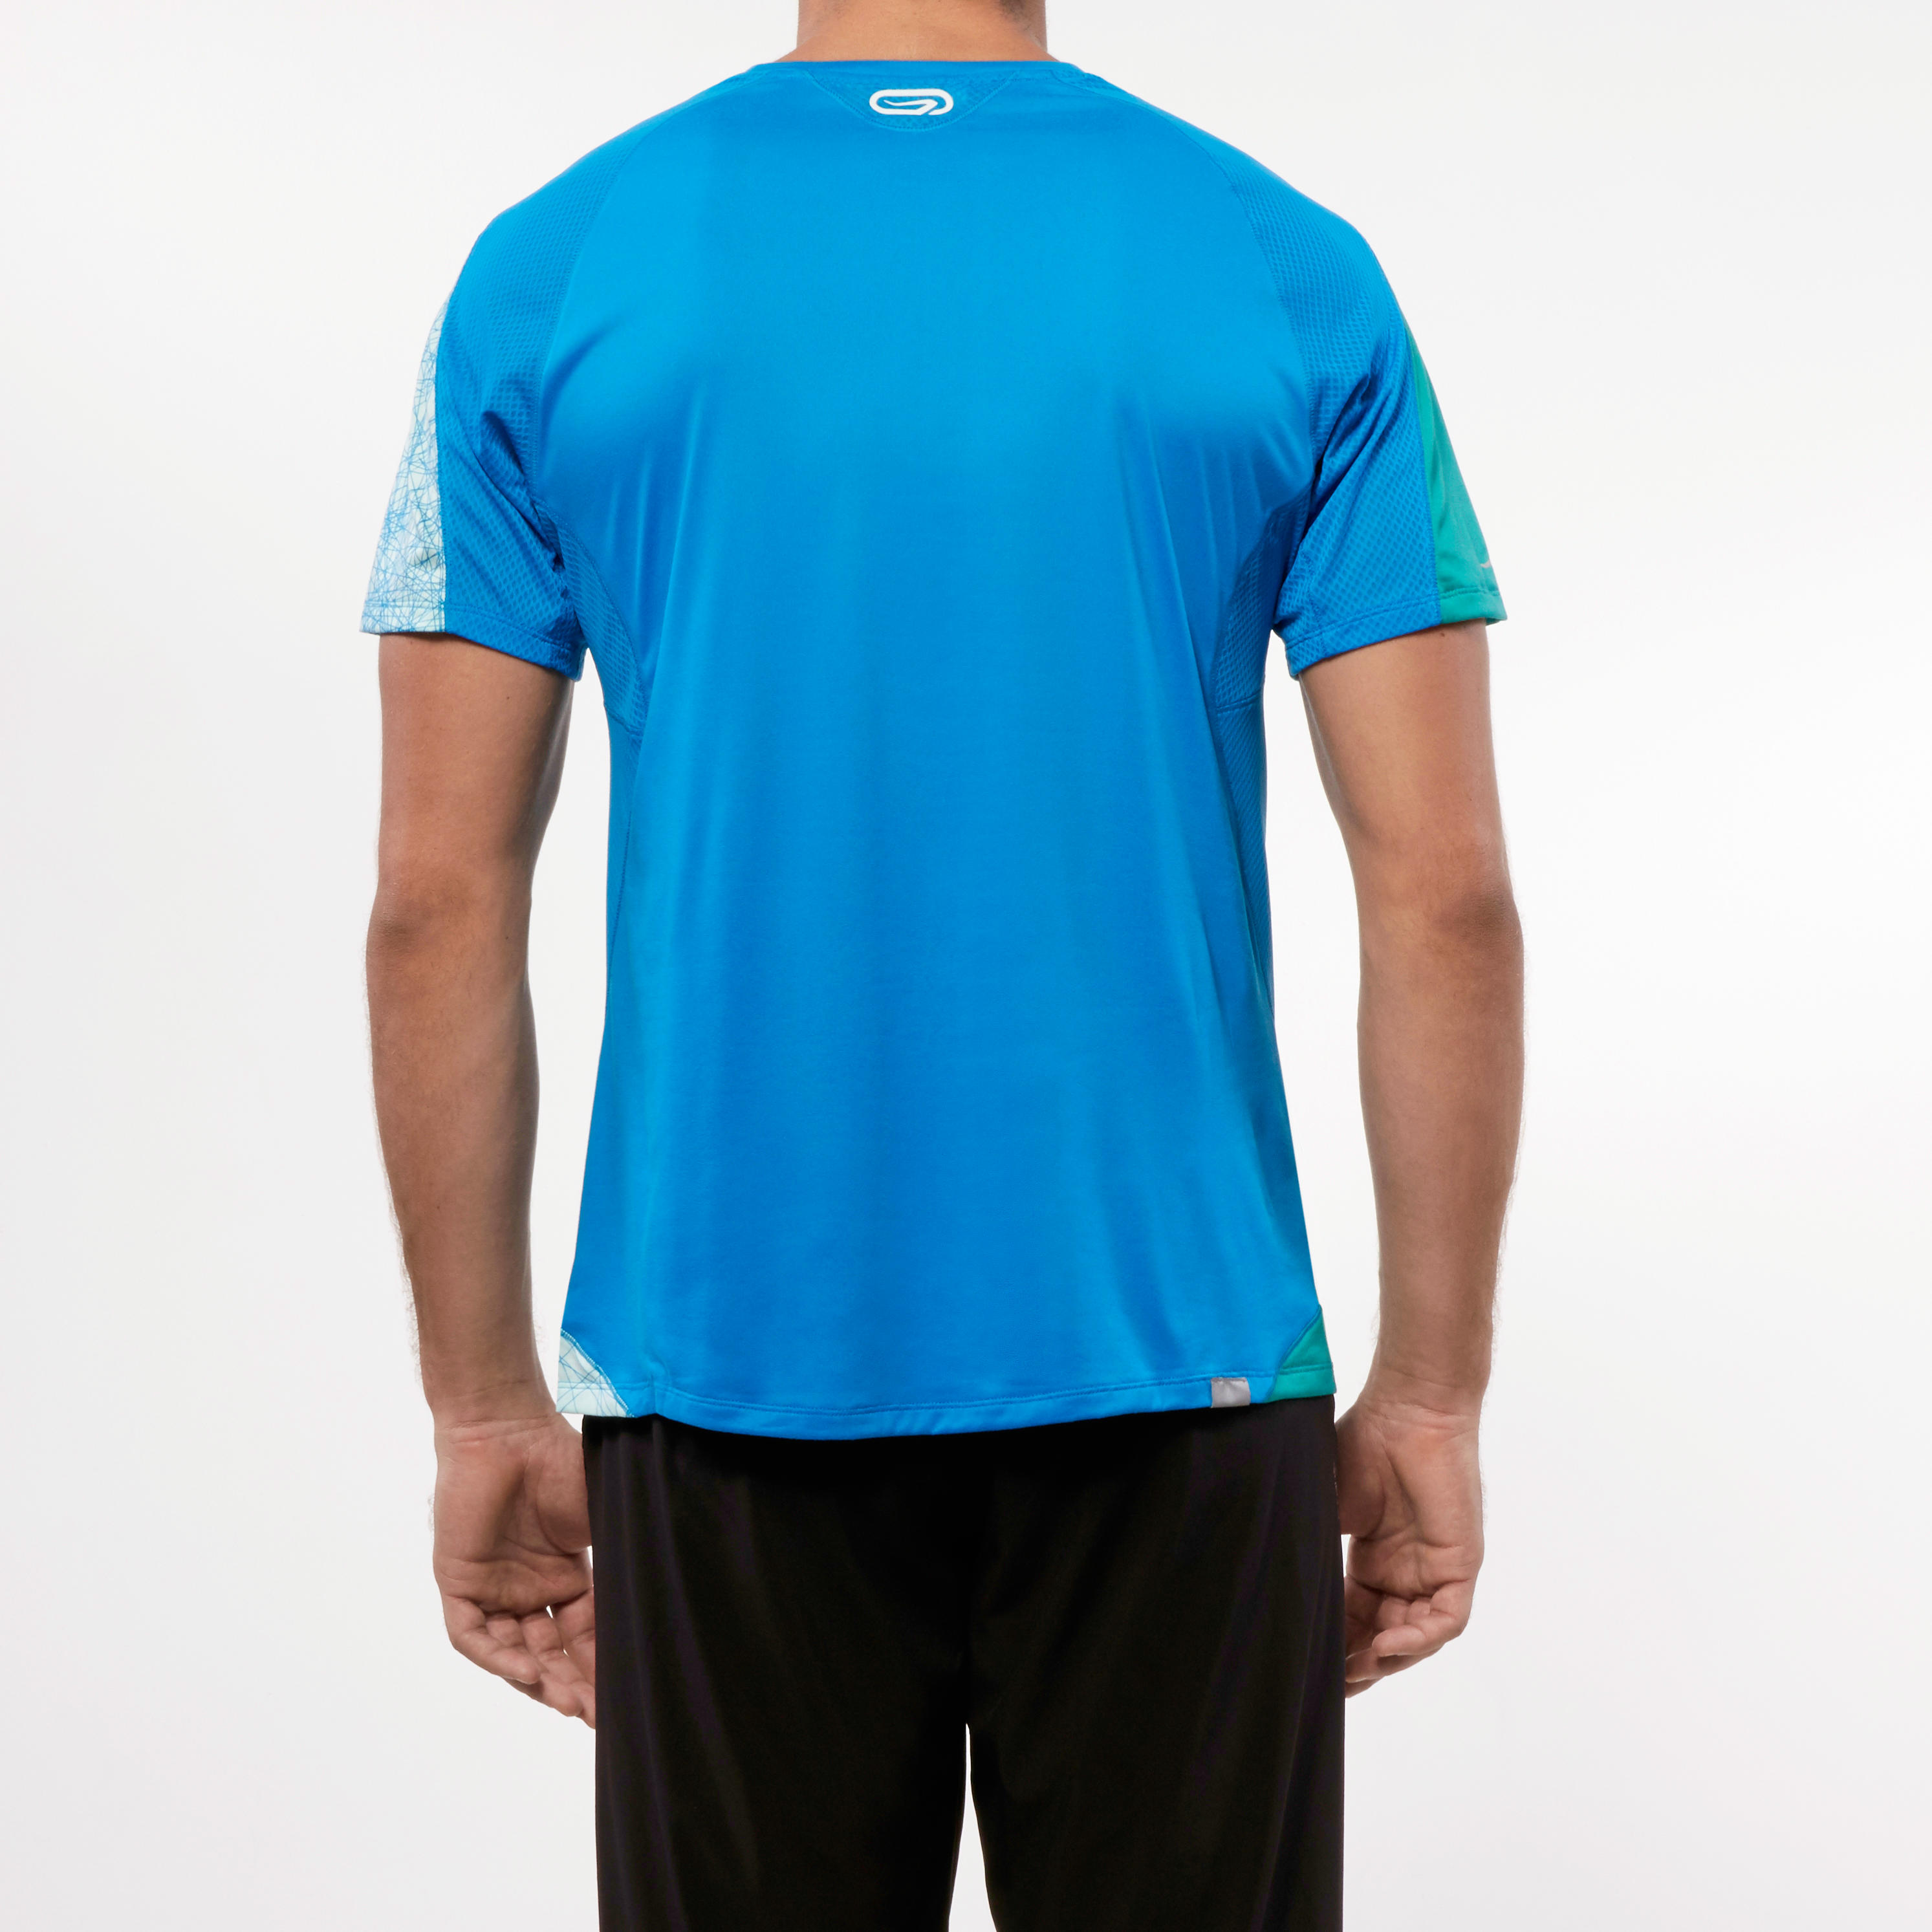 Elio Print Men's Running T-shirt - blue puzzle 5/21